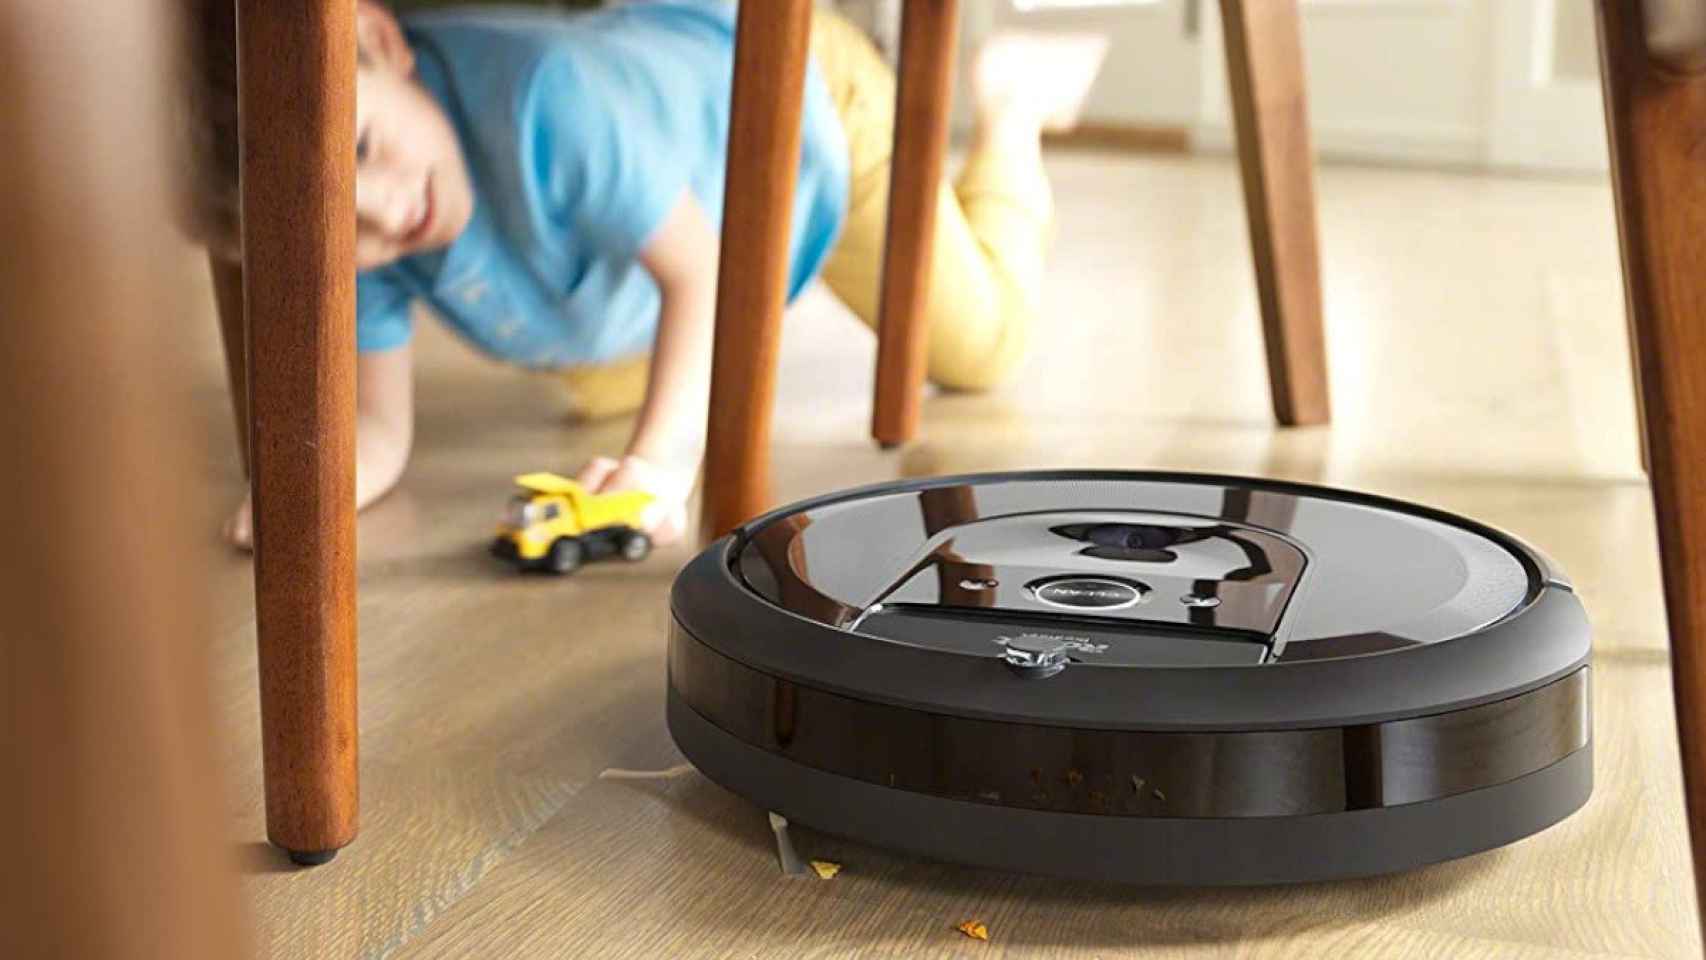 Ofertón del día: este robot aspirador Roomba está rebajado 140